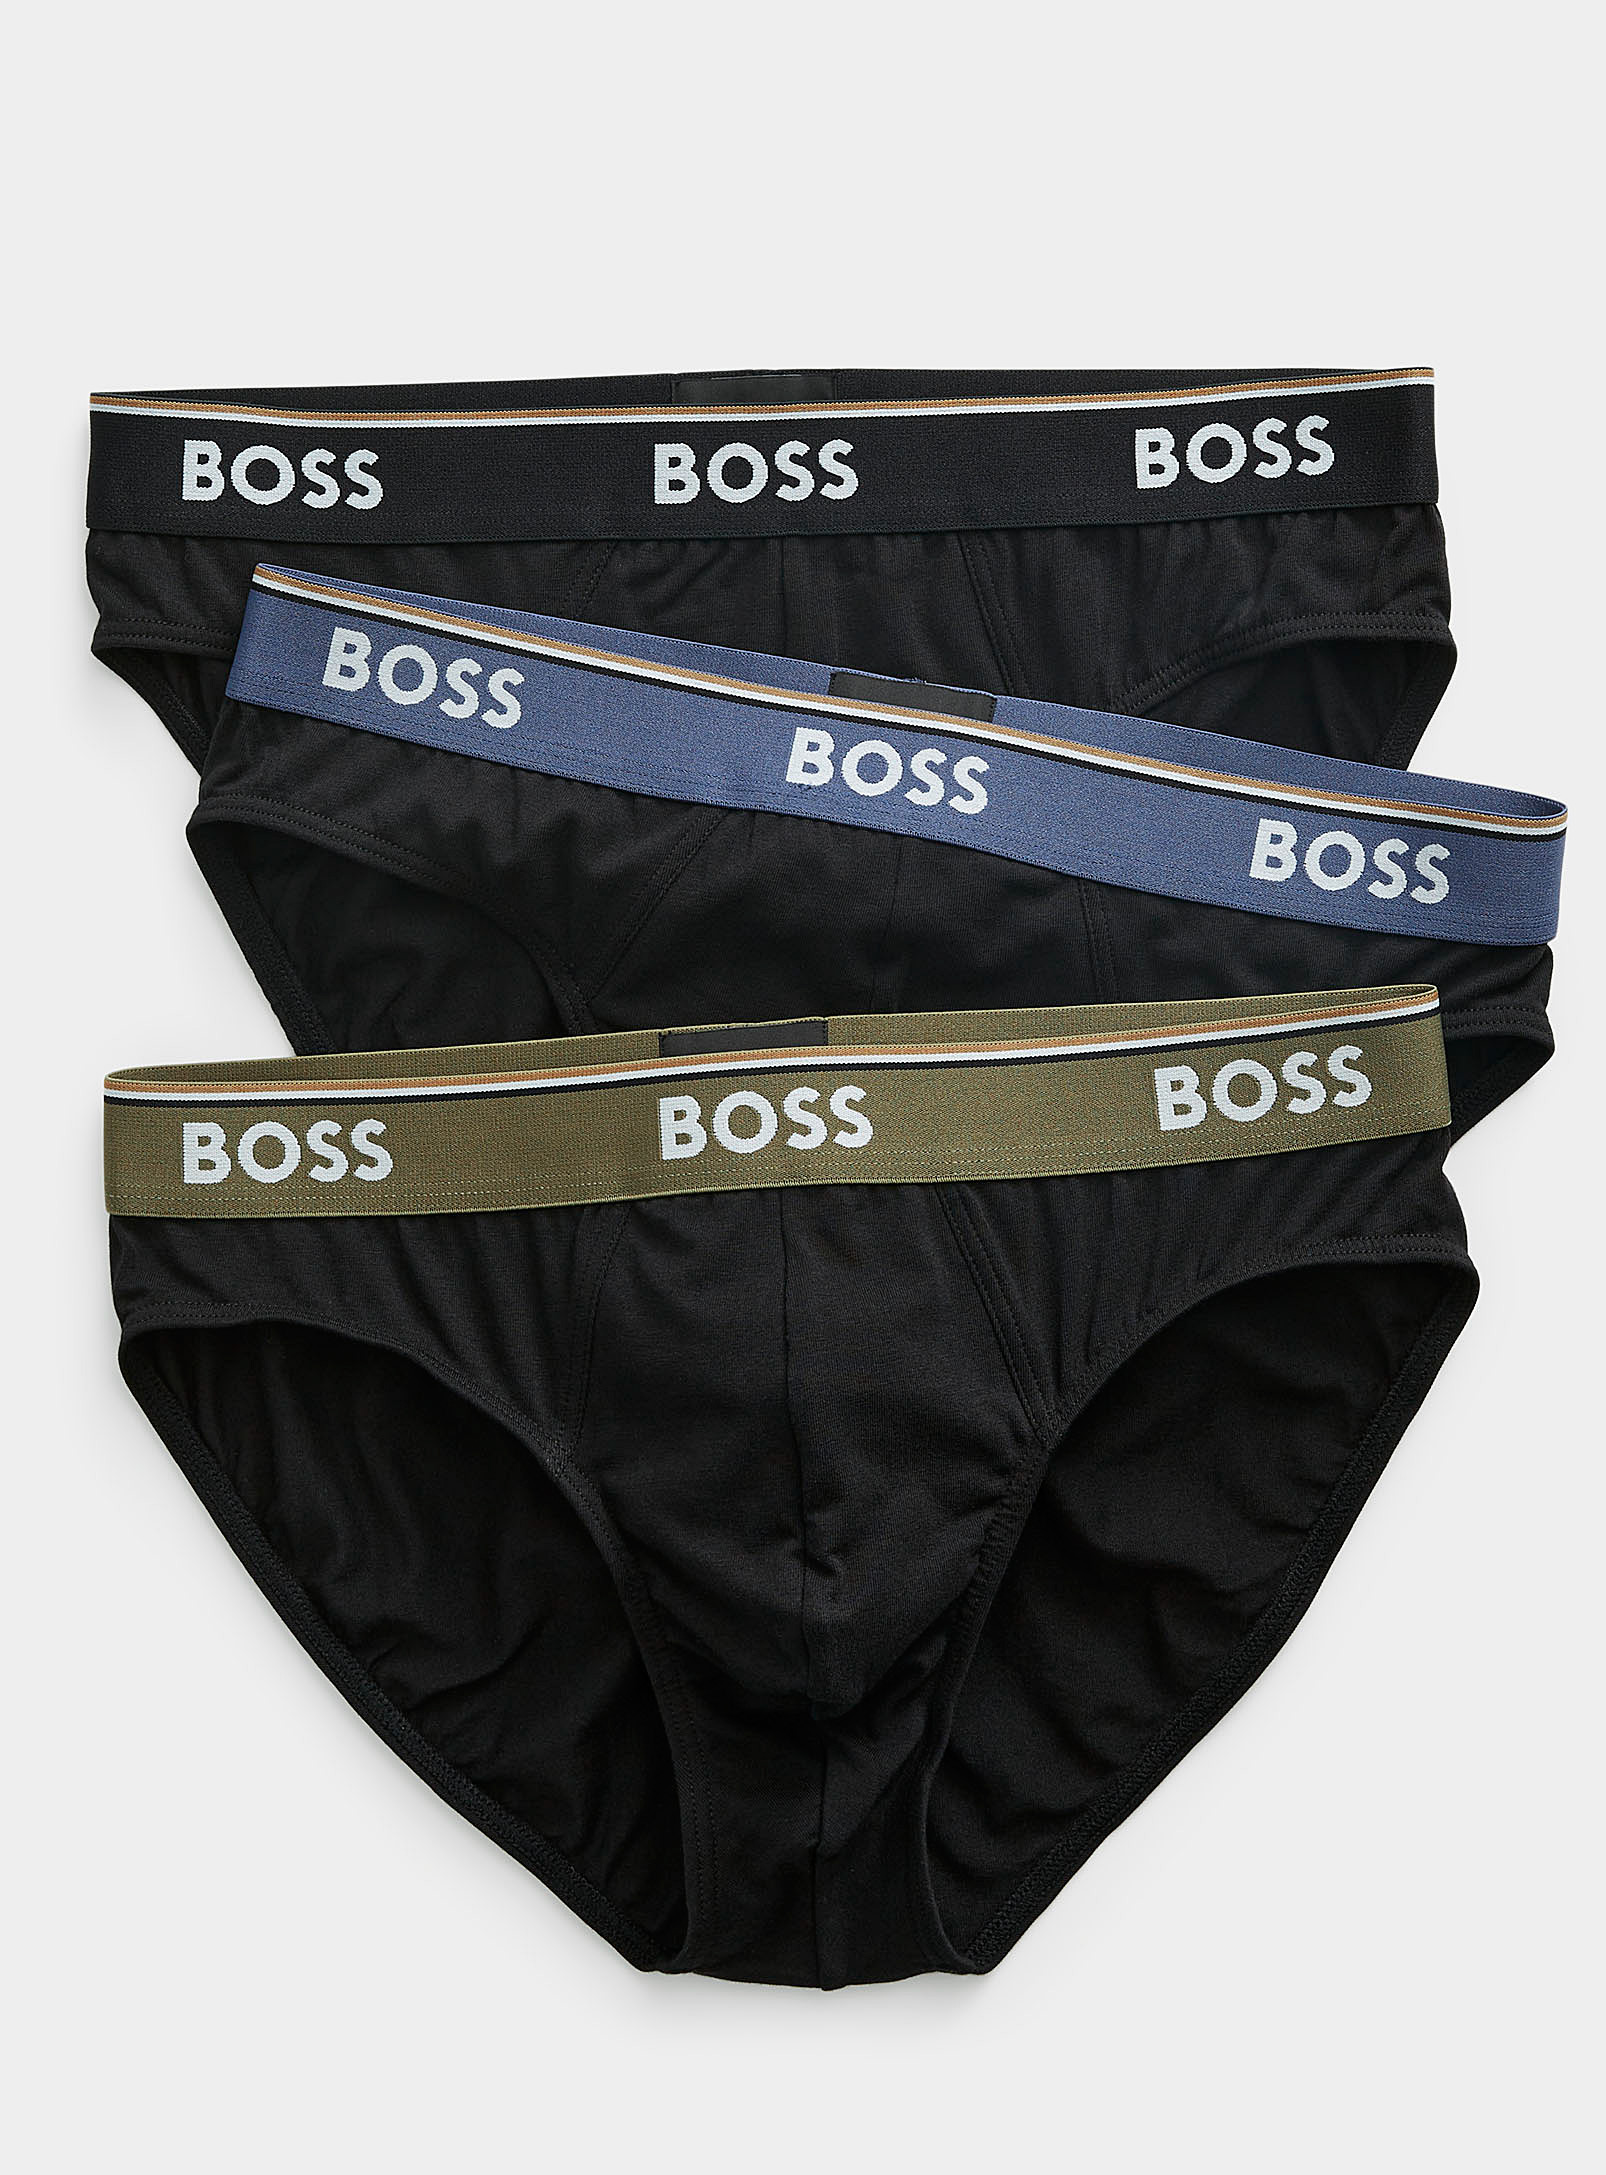 BOSS - Men's Contrast-waist briefs 3-pack